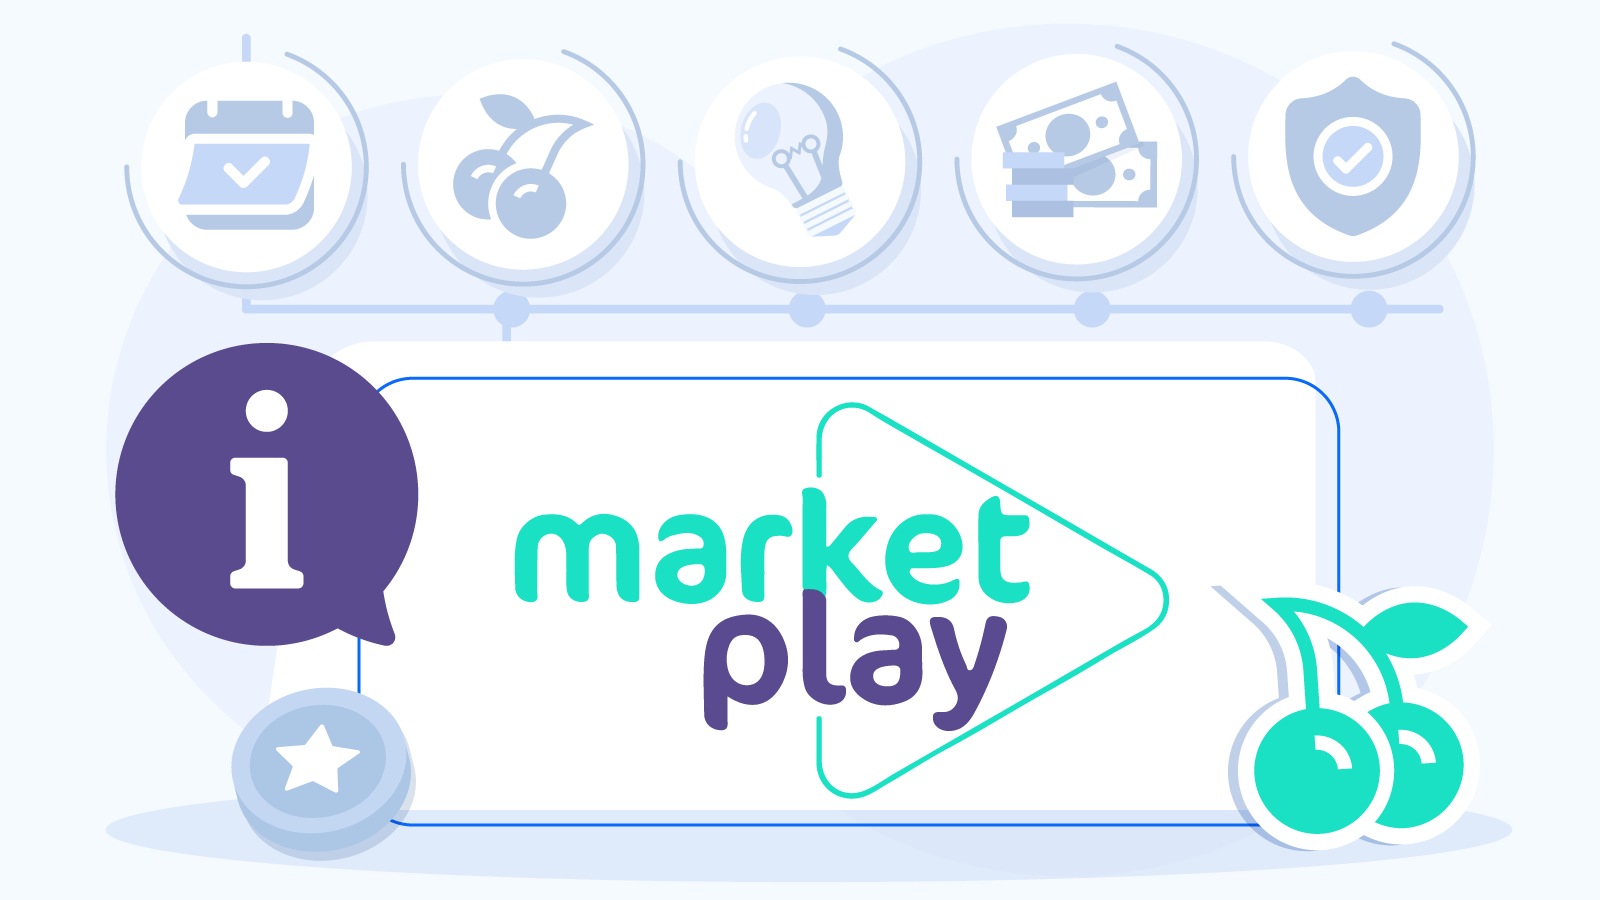 Background & Reputation of MarketPlay